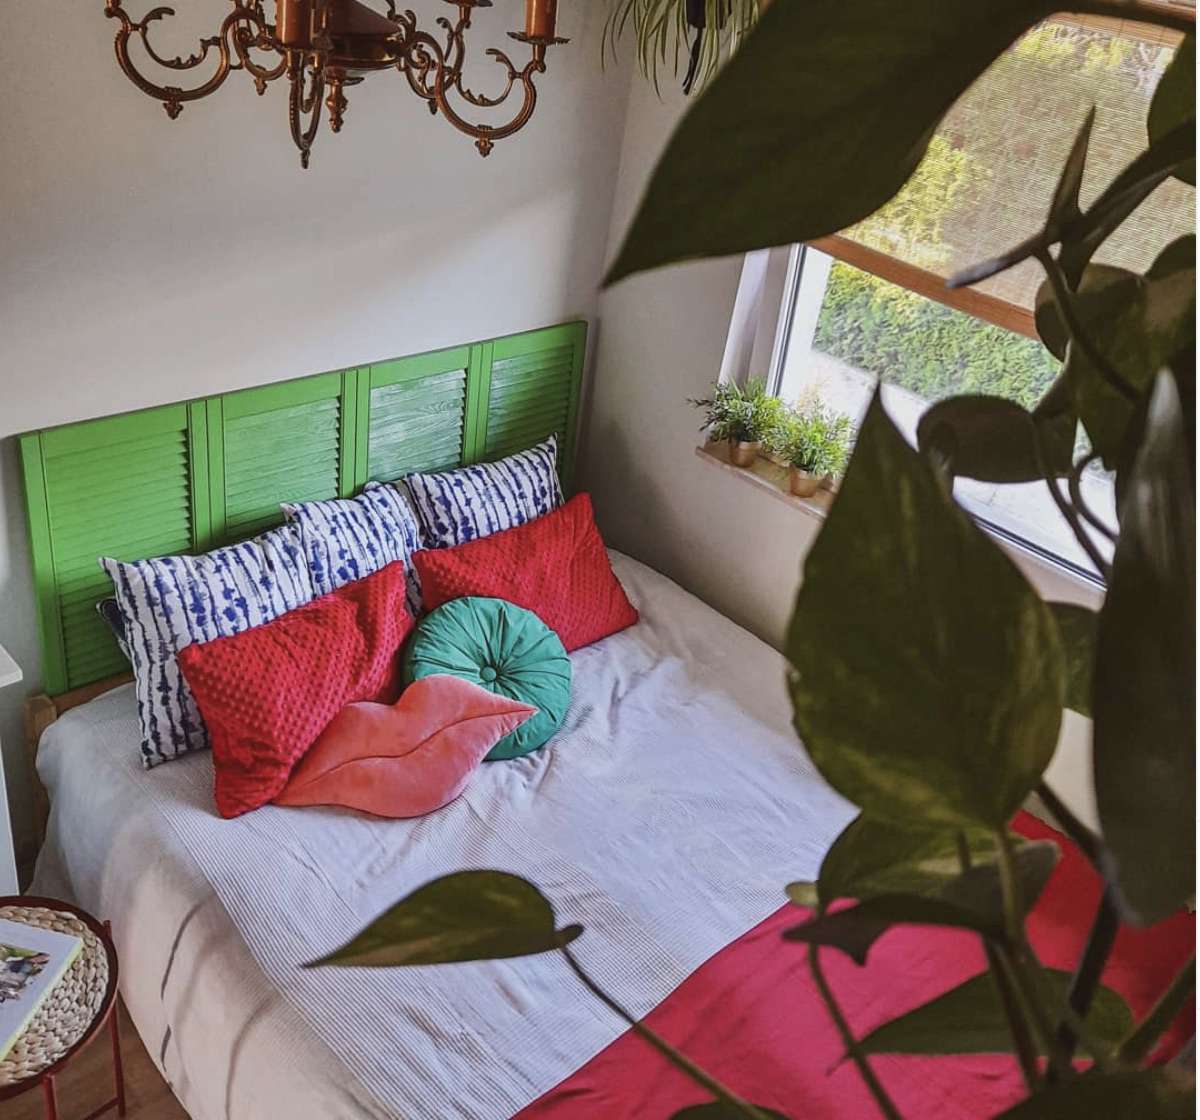 Schlafzimmer mit leuchtend grünem Kopfteil und Pflanzen, roten Kissen und Decke, elegantem Bronzekandelaber